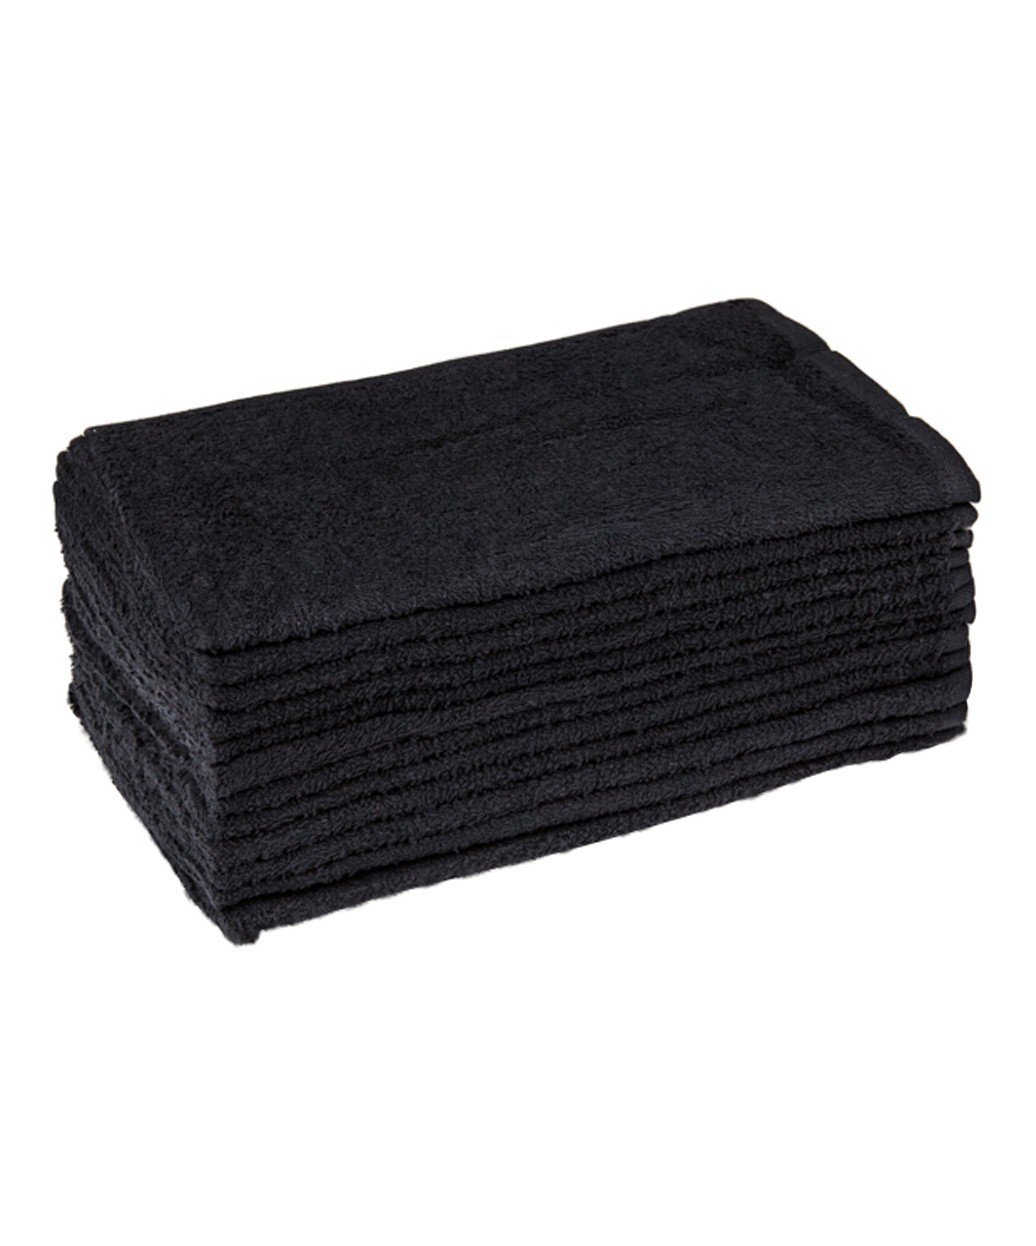 Bleach Resistant Black Towels - 12 Pack